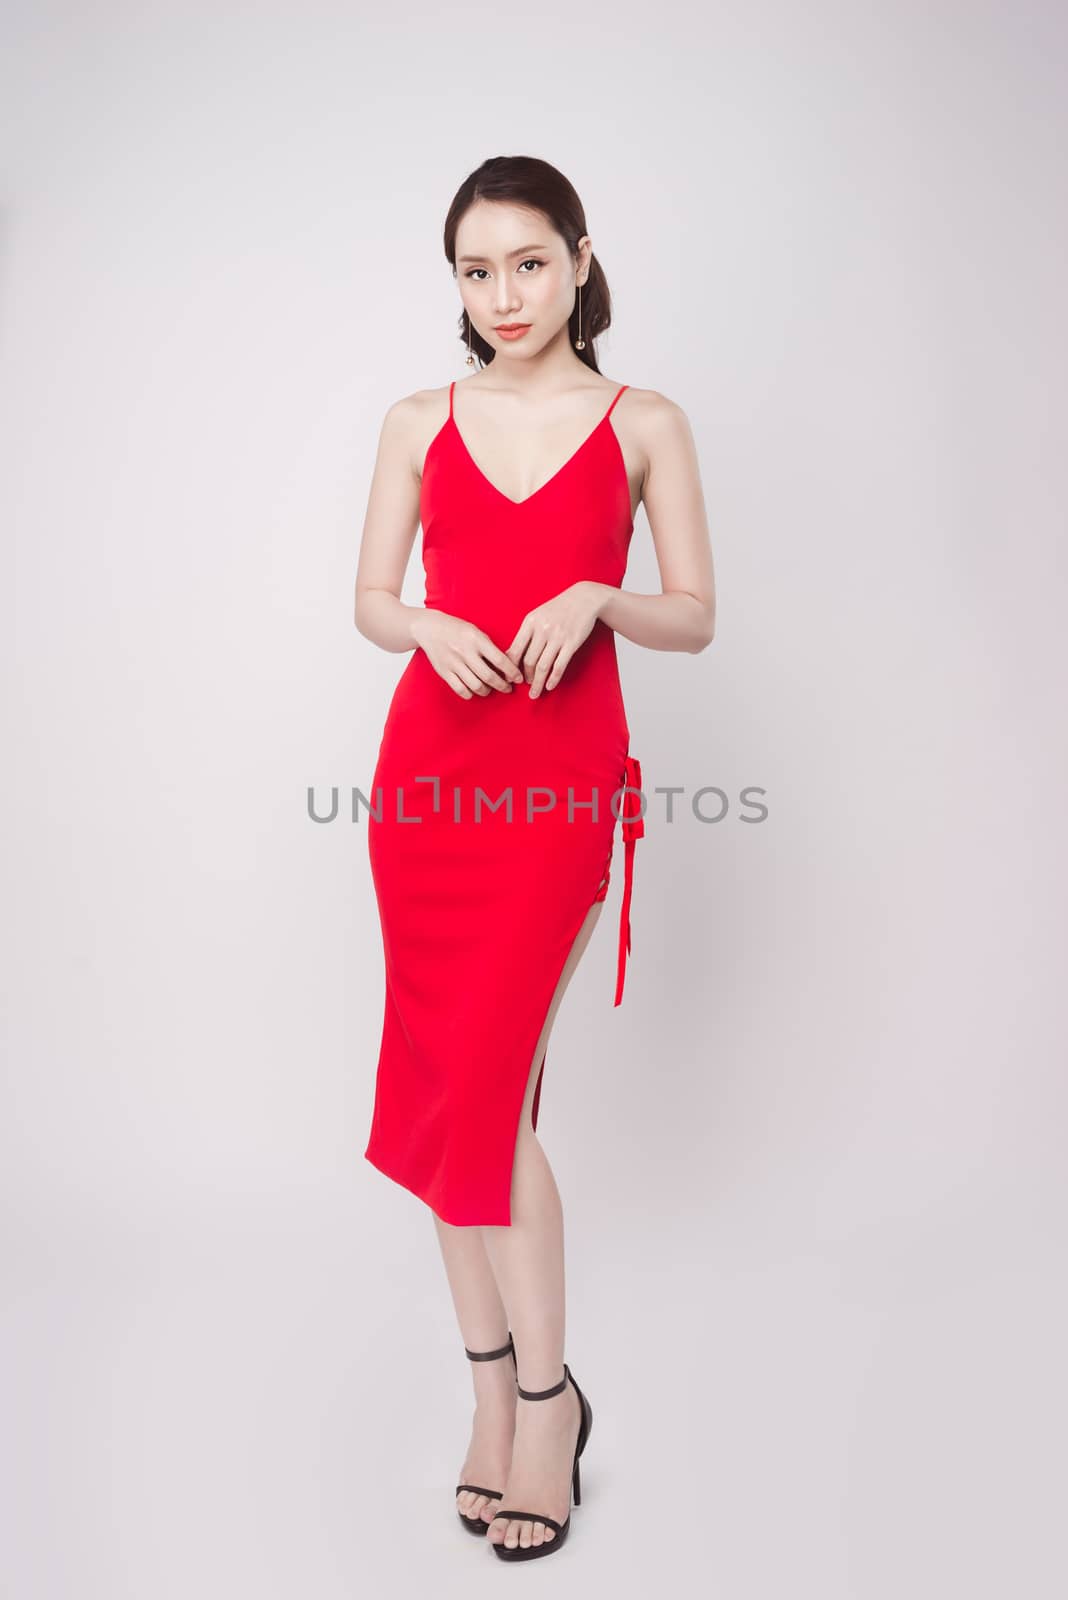 Beautiful stylish asian woman wearing red dress on grey backgrou by makidotvn